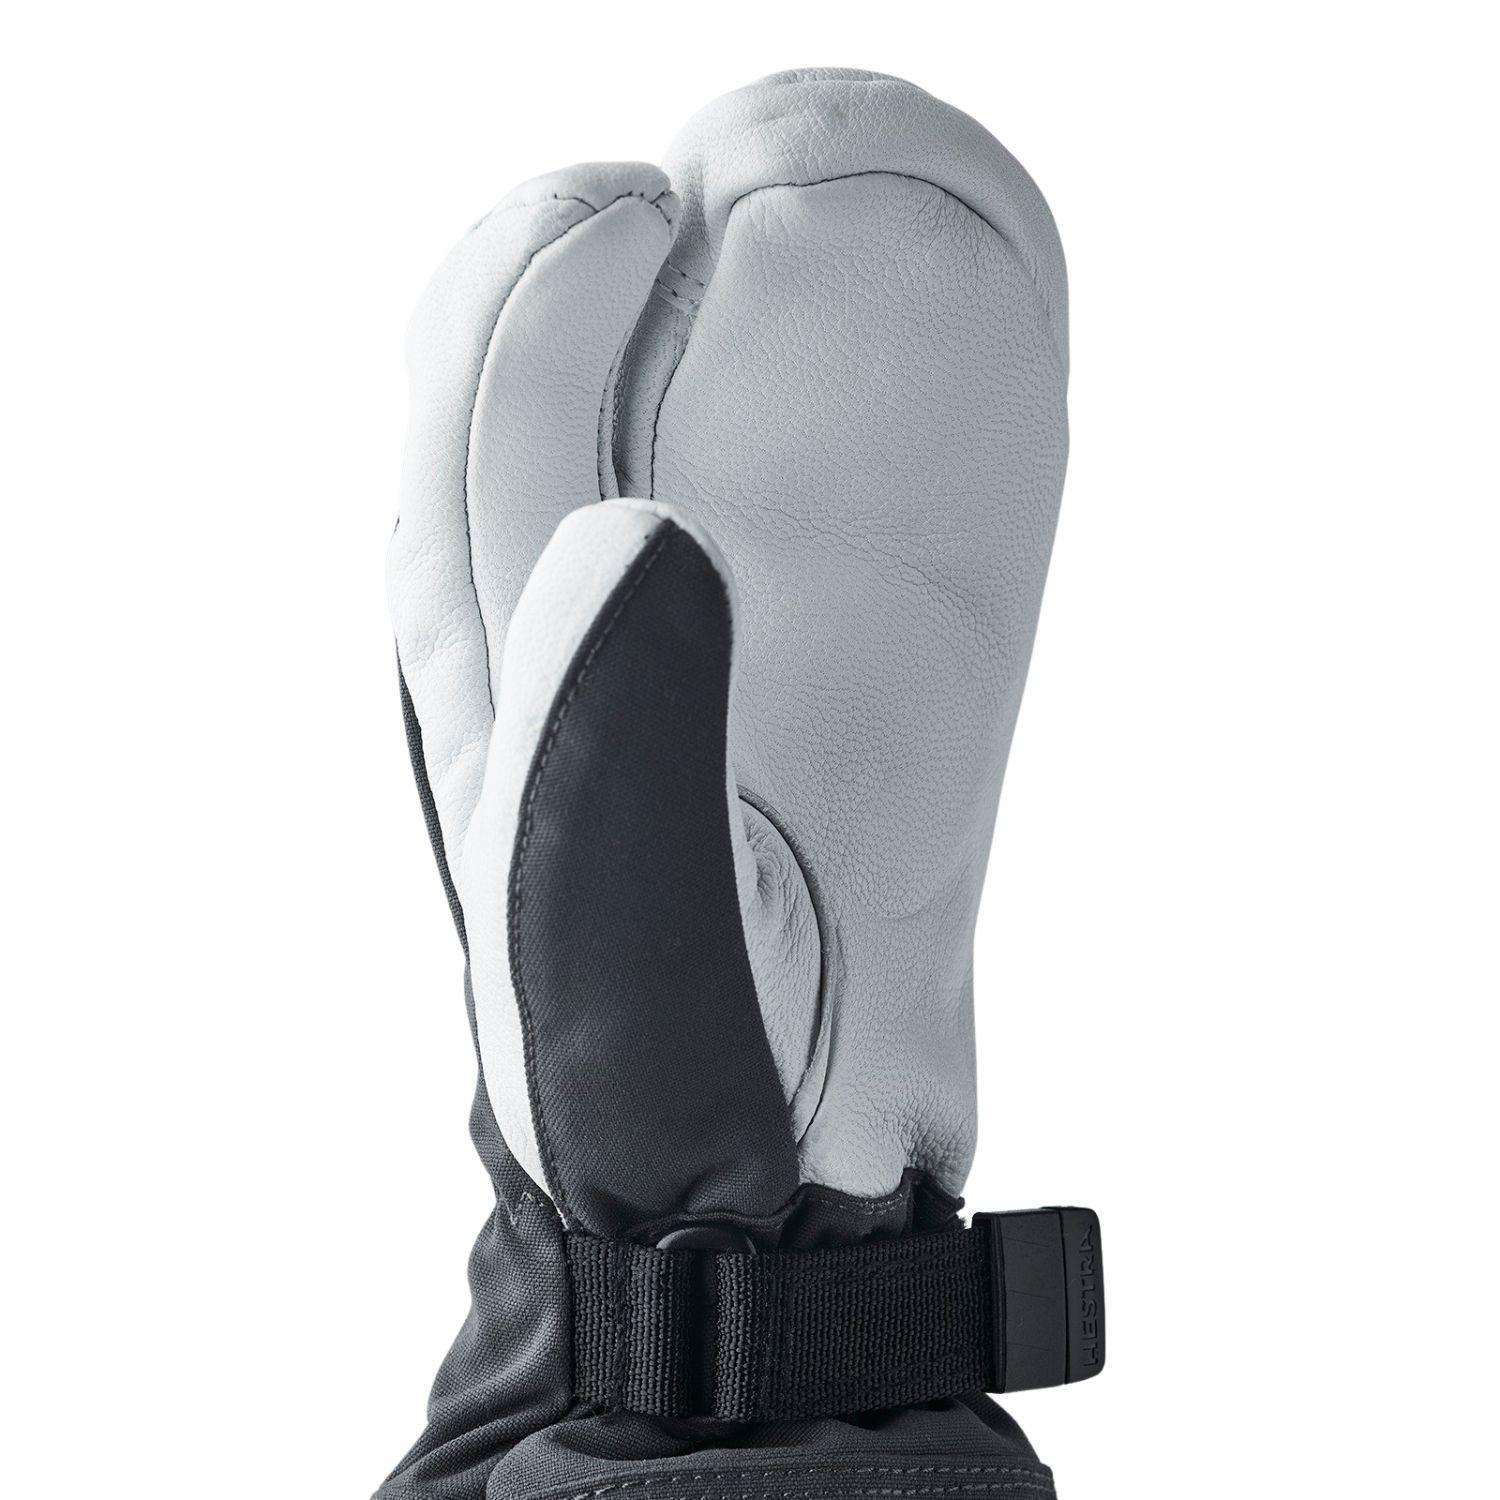 Hestra Army Leather Heli Ski, 3-finger ski gloves, junior, grey